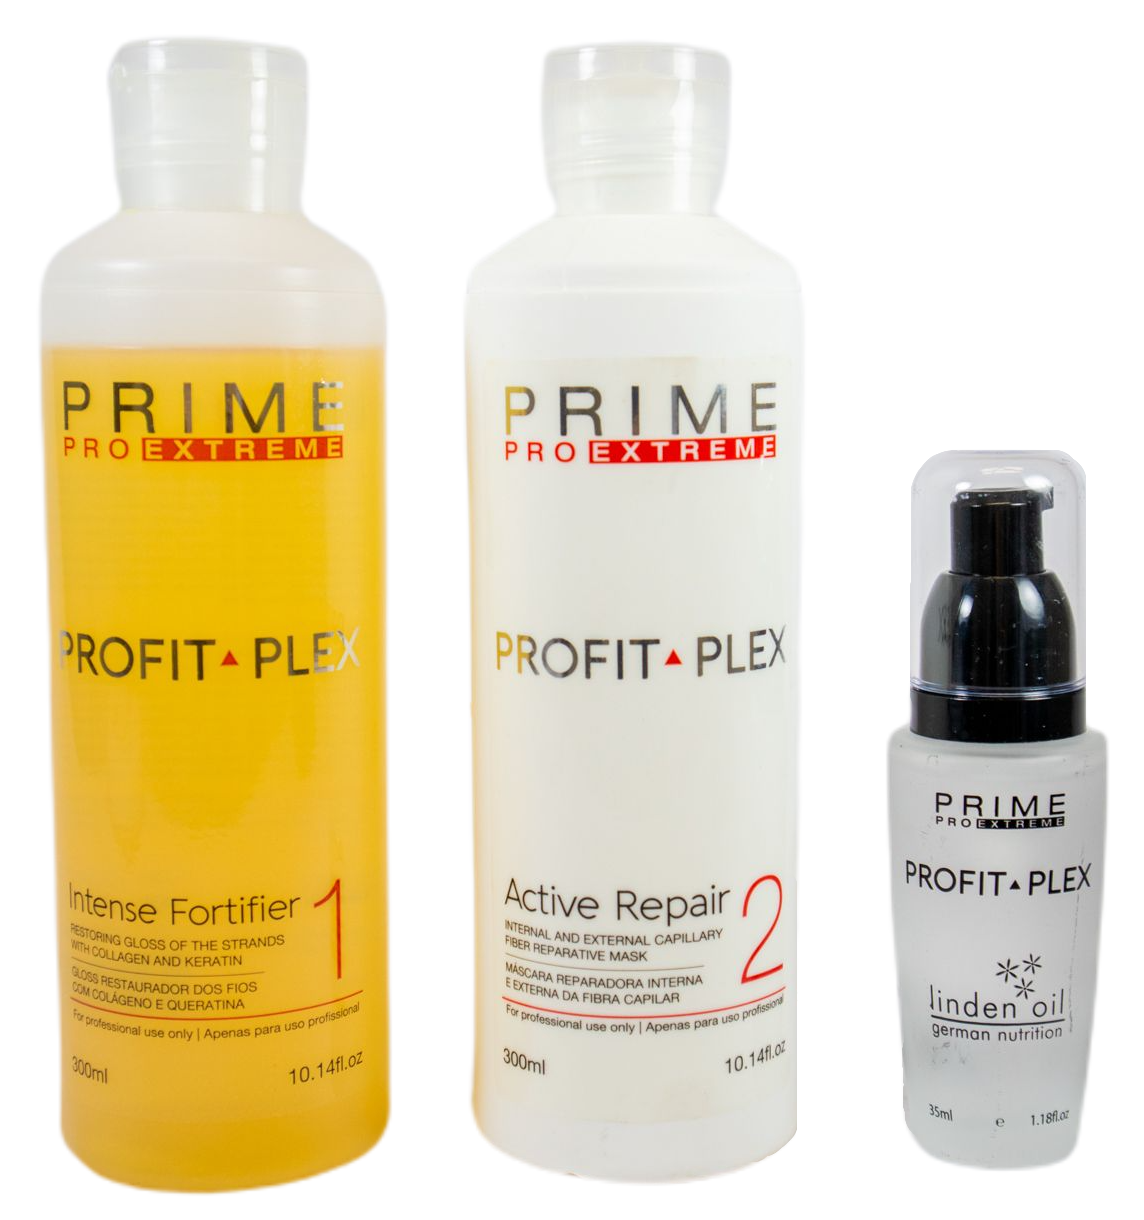 Prime Pro Extreme Brazilian Keratin Treatment Profit Plex Professional Treatment Kit - Prime Pro